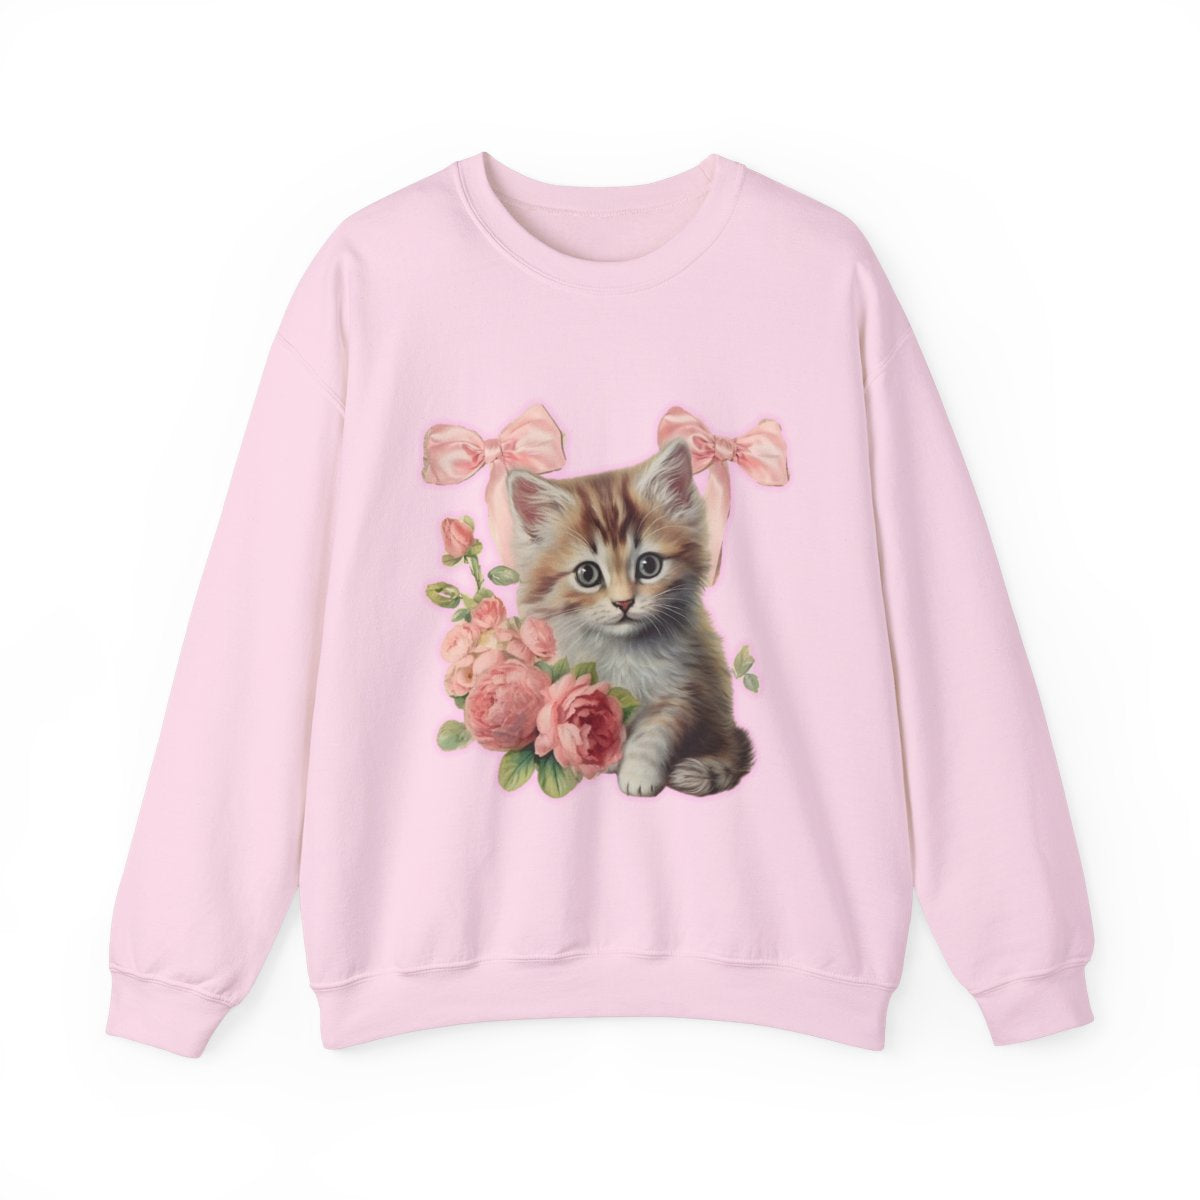 Coquette Kitten Crewneck Sweatshirt